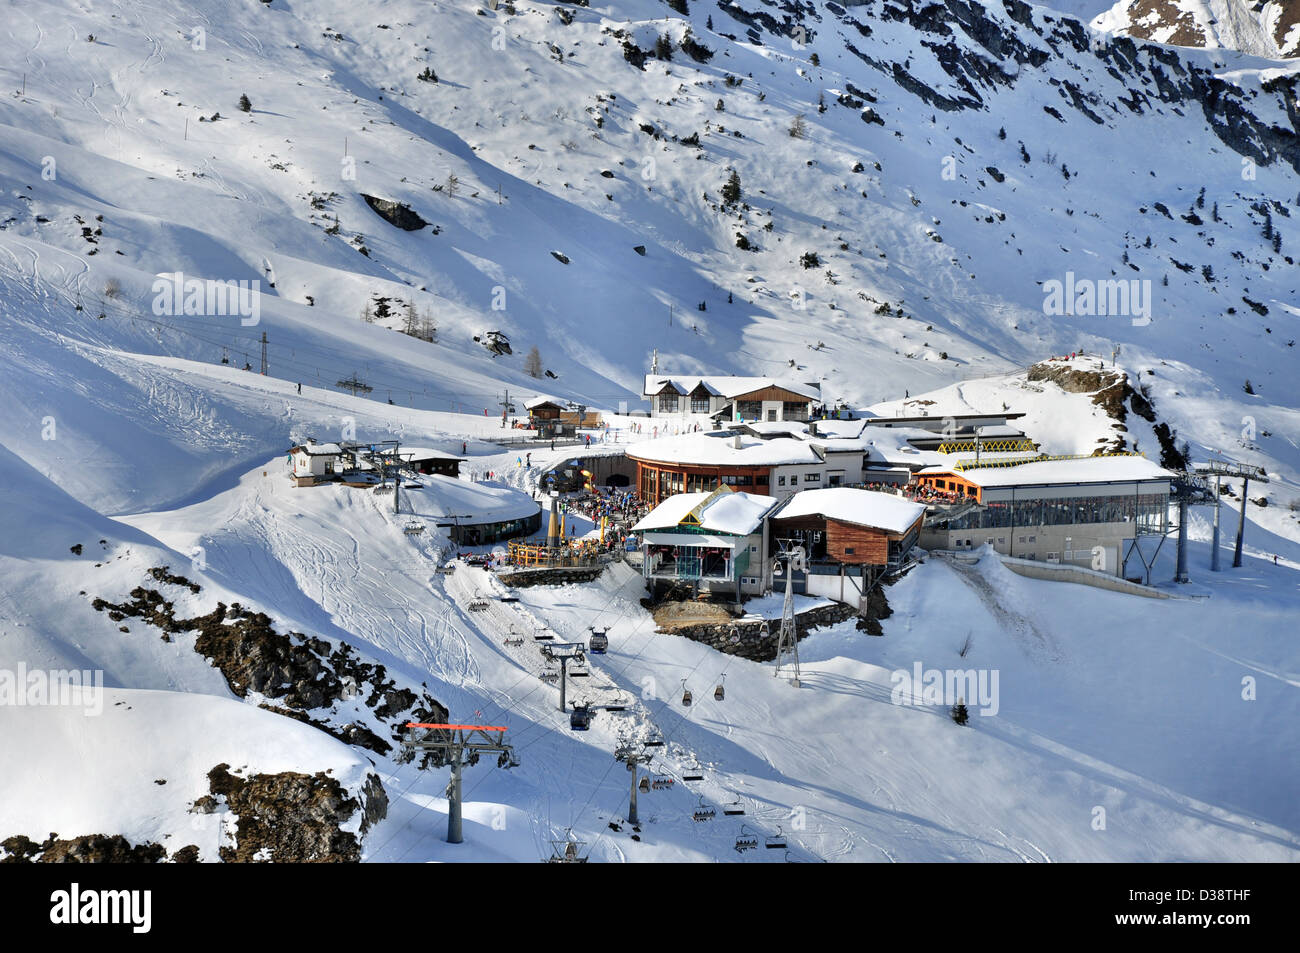 Ski-Zentrum am Hintertuxer Gletscher in den Zillertaler Alpen in Österreich, mit einer Seilbahn-Station, Restaurant, Bar und Skilifte Stockfoto